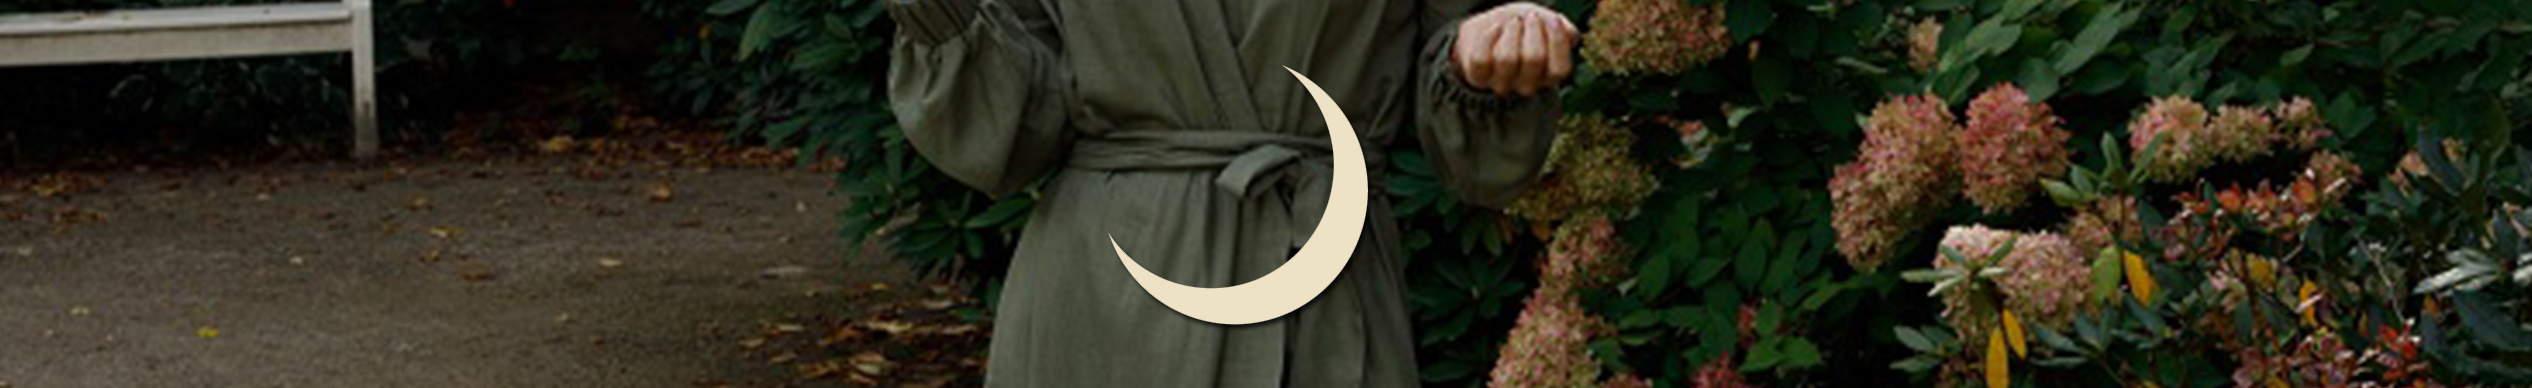 symbole księżyc